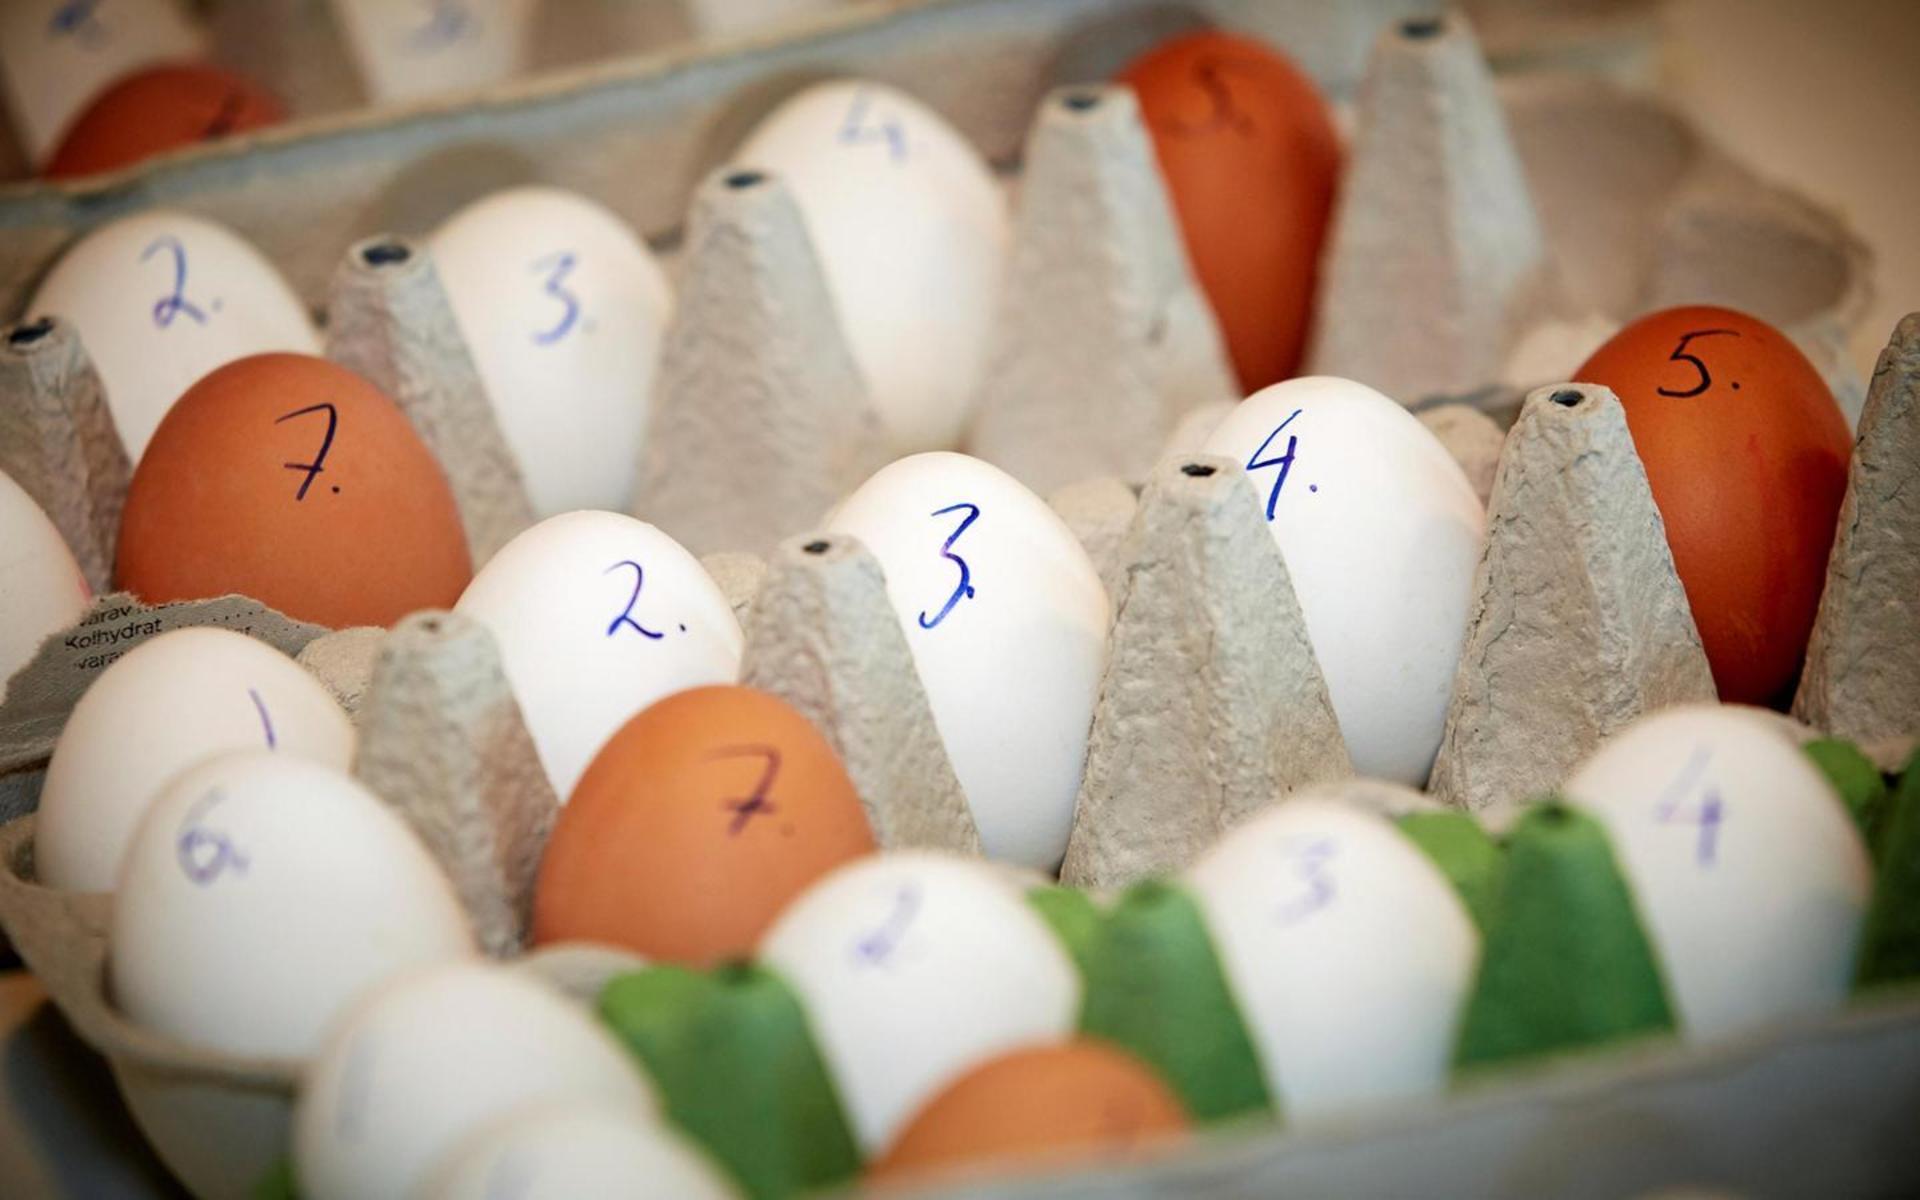 Hårdkokta ägg testades lagom till påsk, eftersom det är en viktig del i ett traditionsenligt buffébord.